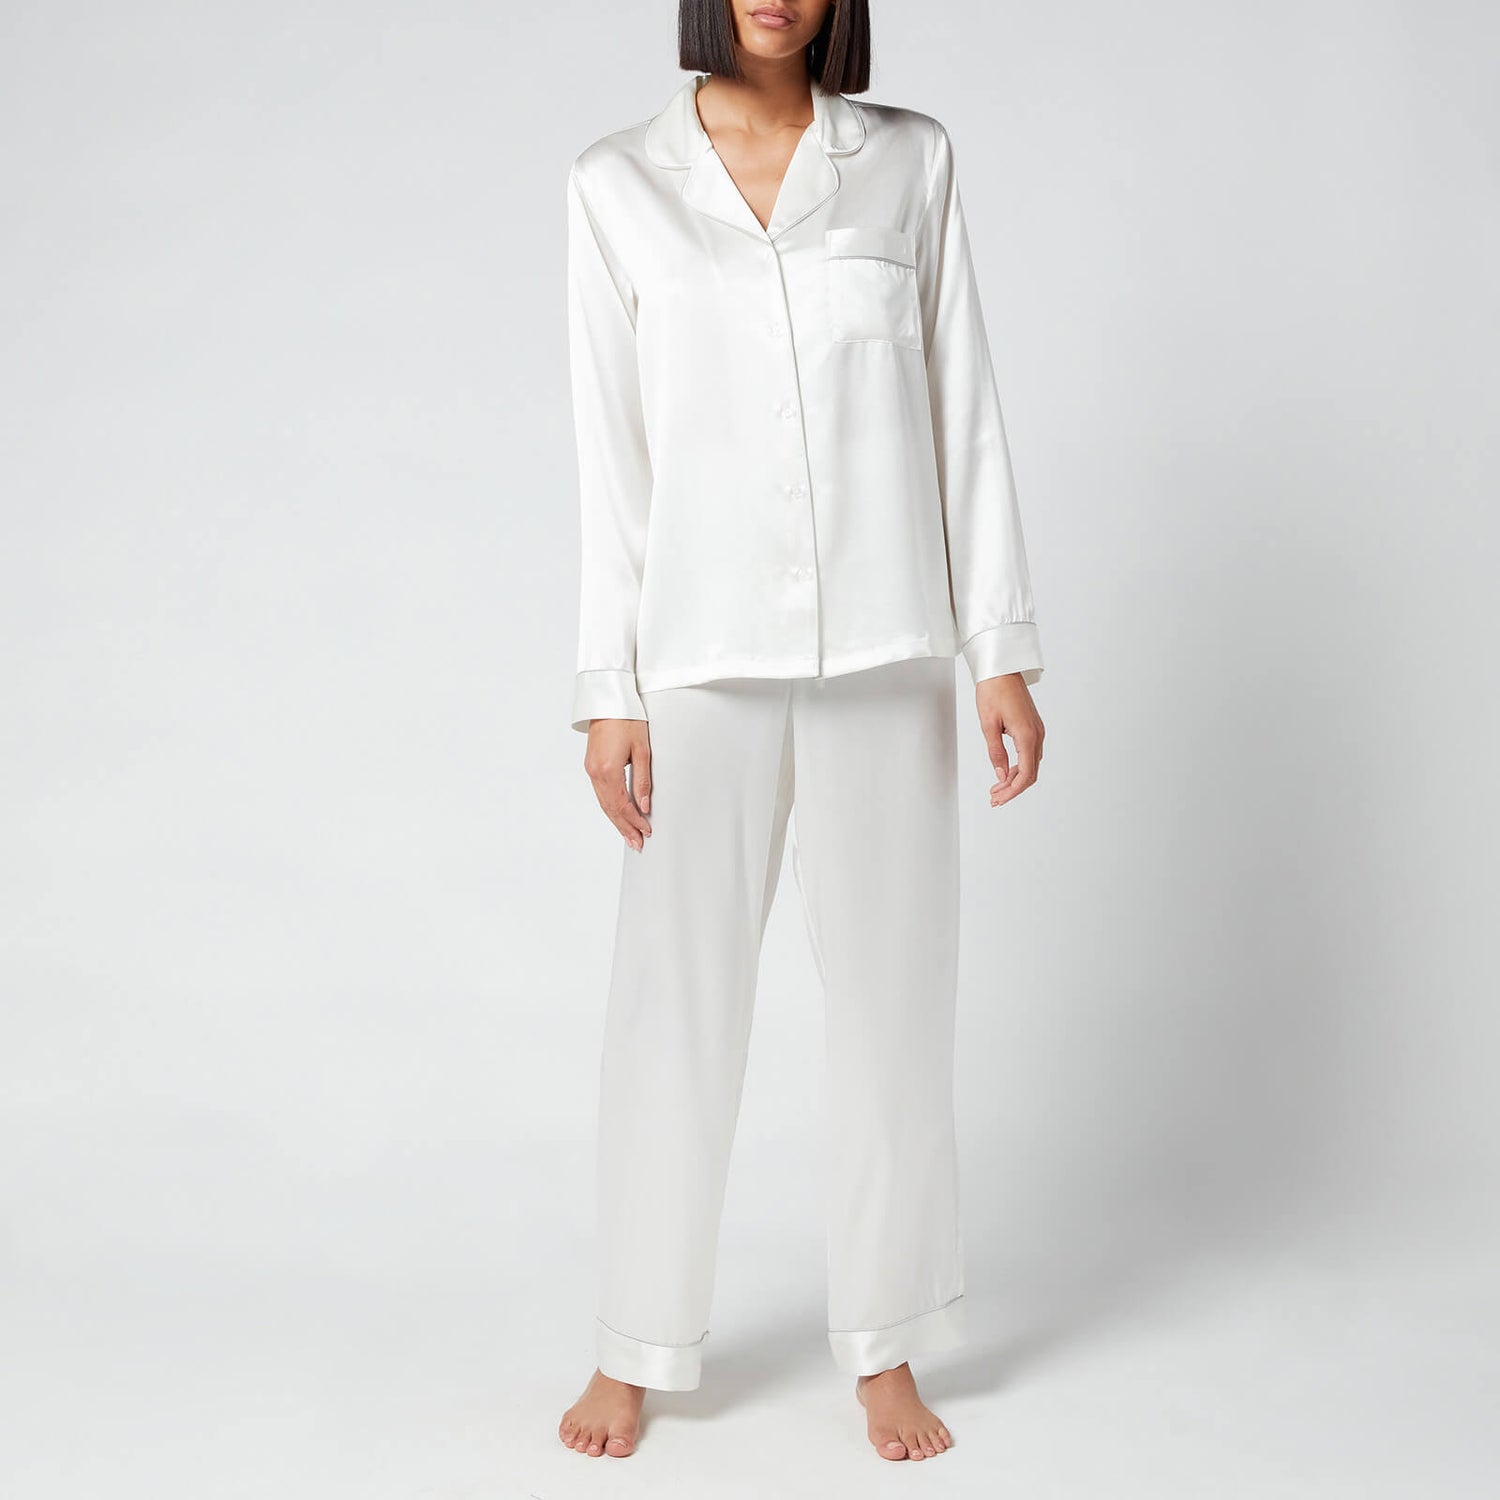 ESPA Silk Pyjamas - White - L